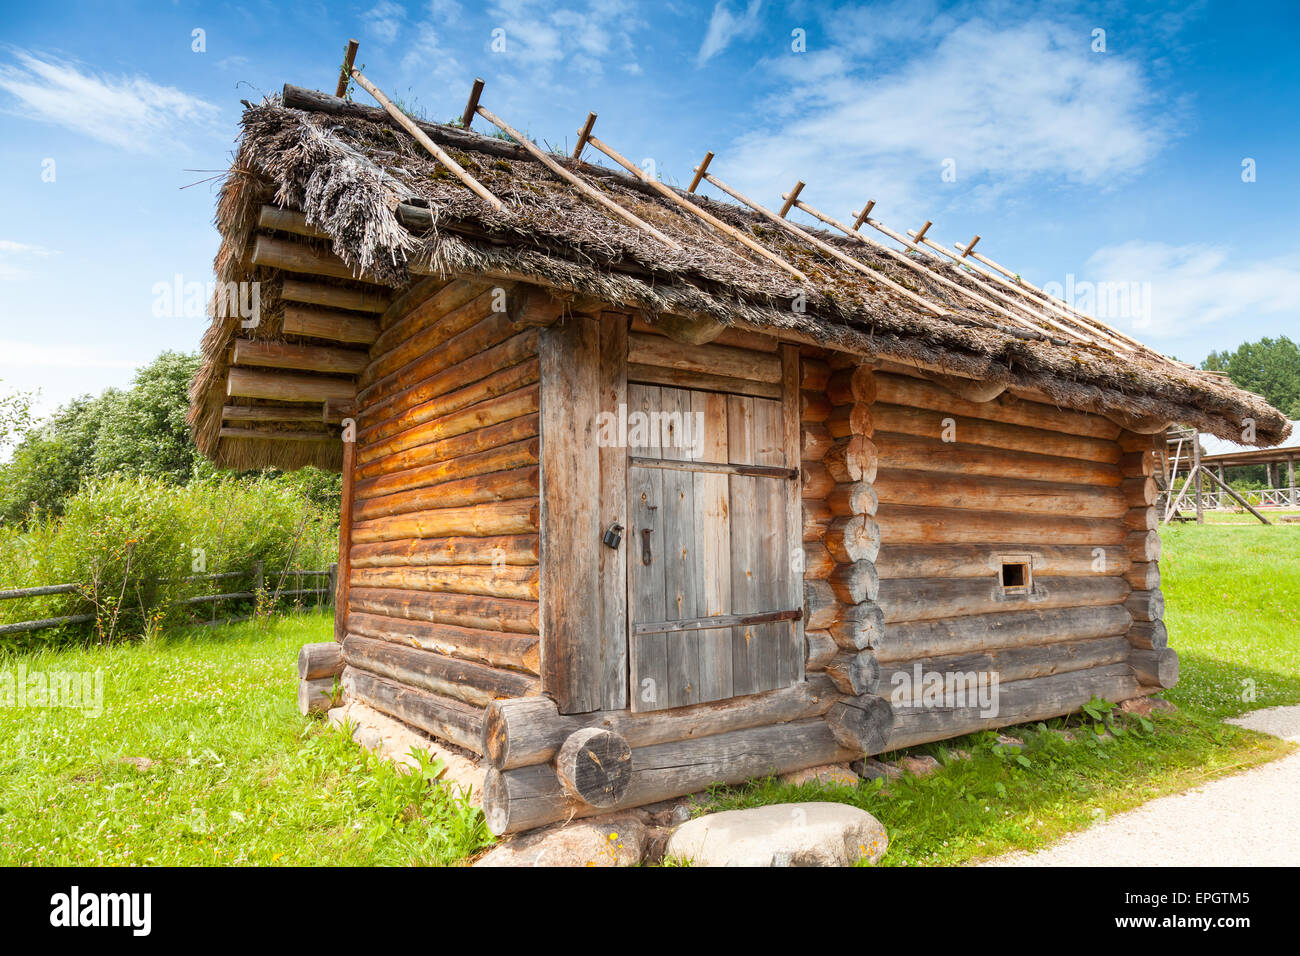 Par exemple l'architecture en bois, petit bain russe rural bâtiment dans une cour rurale Banque D'Images